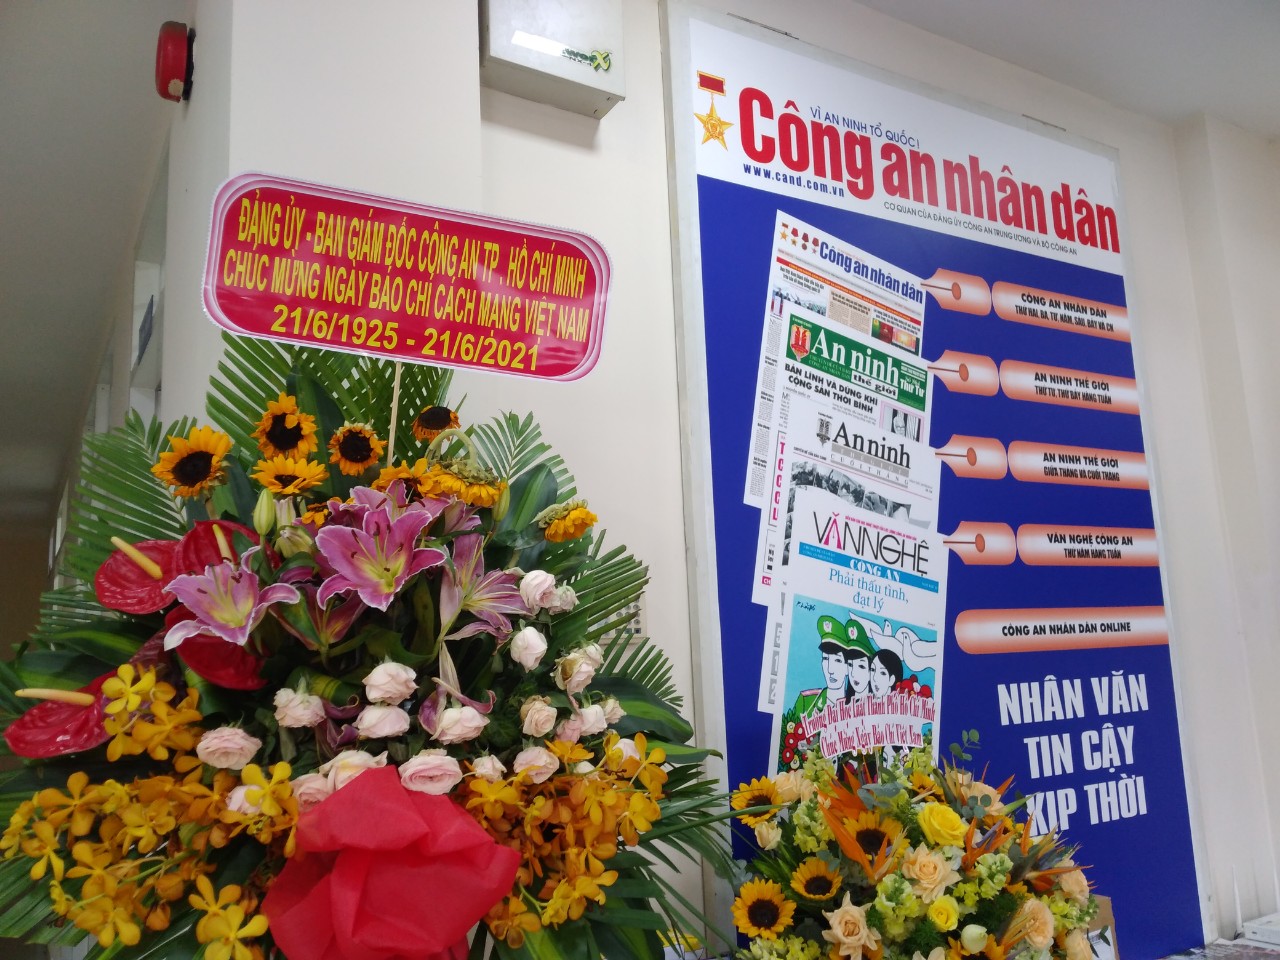 Báo CAND tại TP Hồ Chí Minh nhận được nhiều lời chúc mừng Ngày 21/6